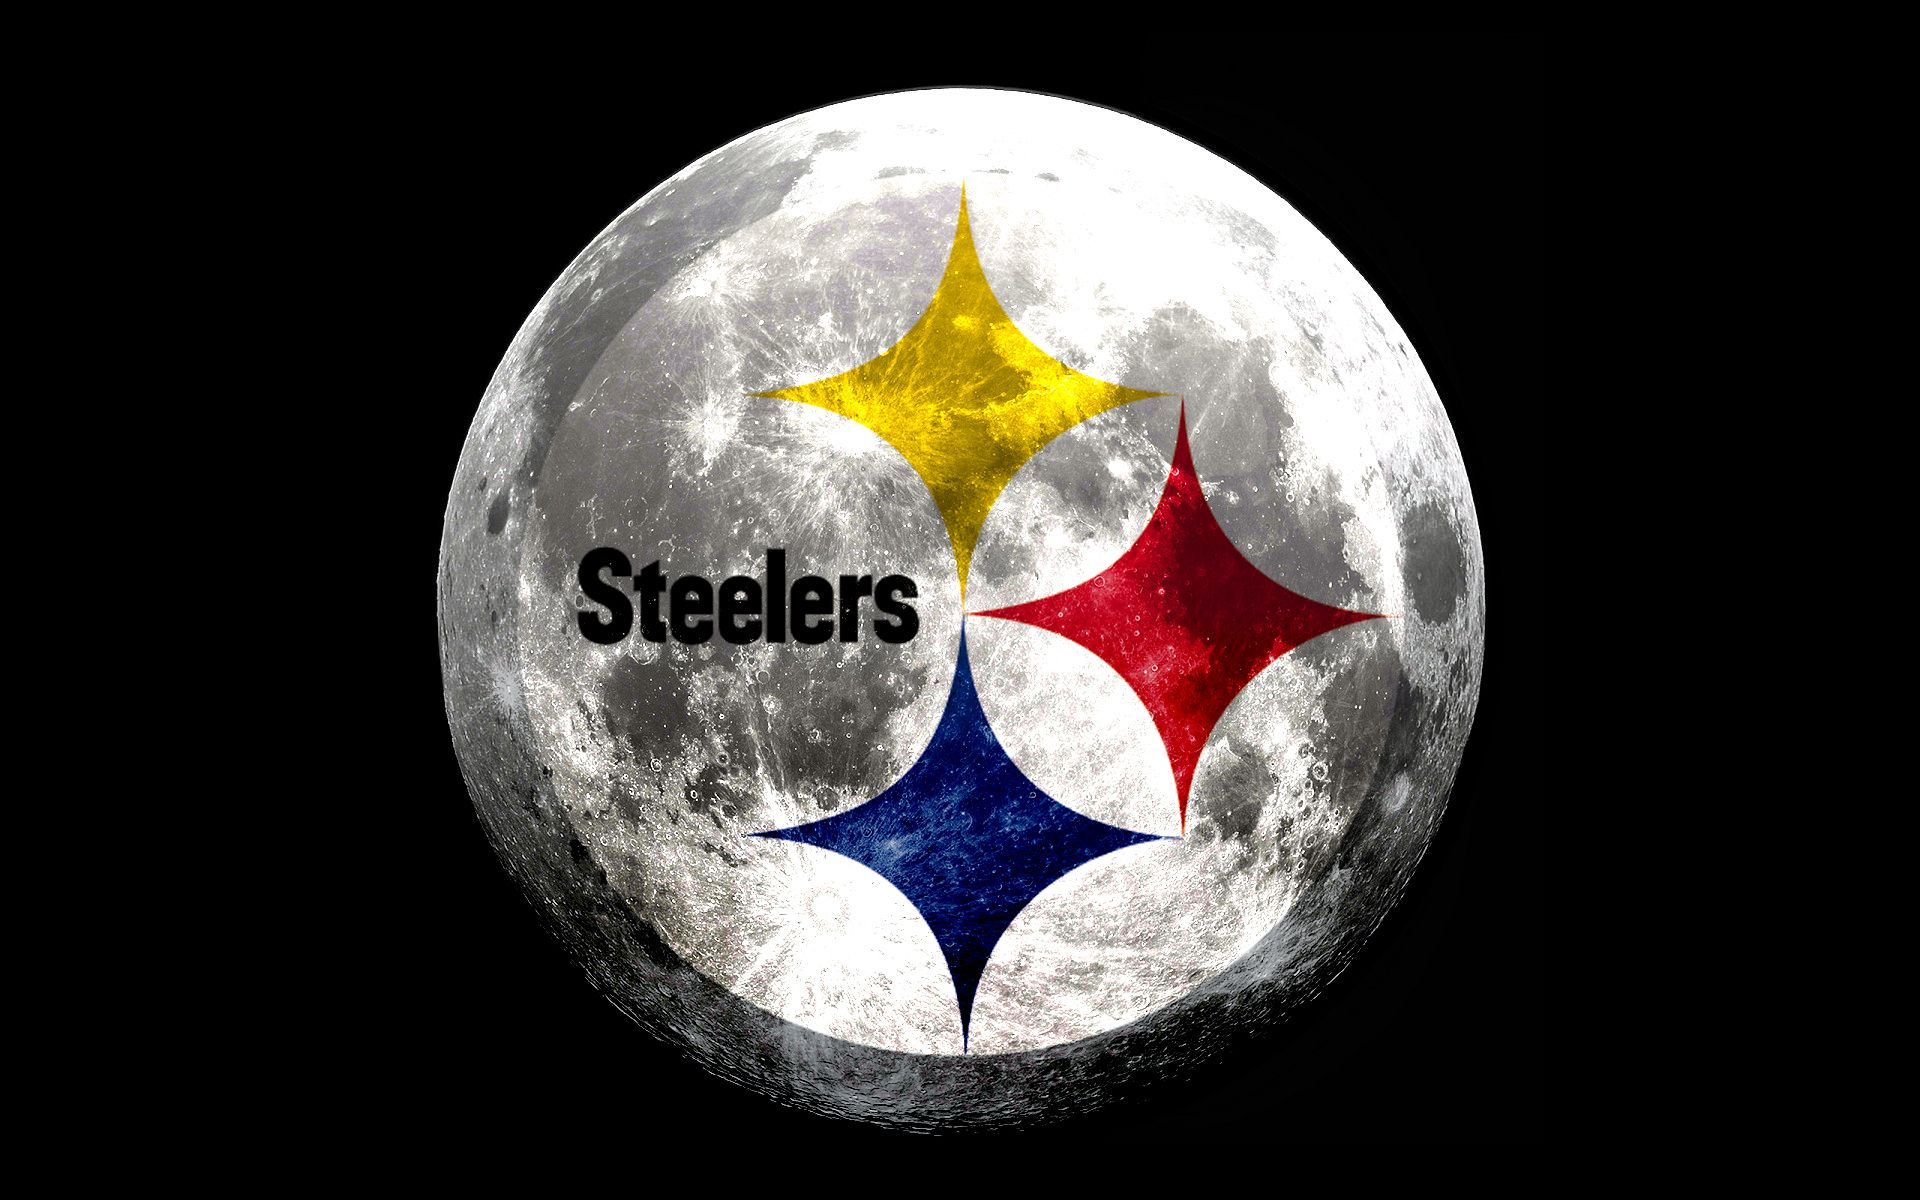 Steelers Wallpapers - Steel City Blitz